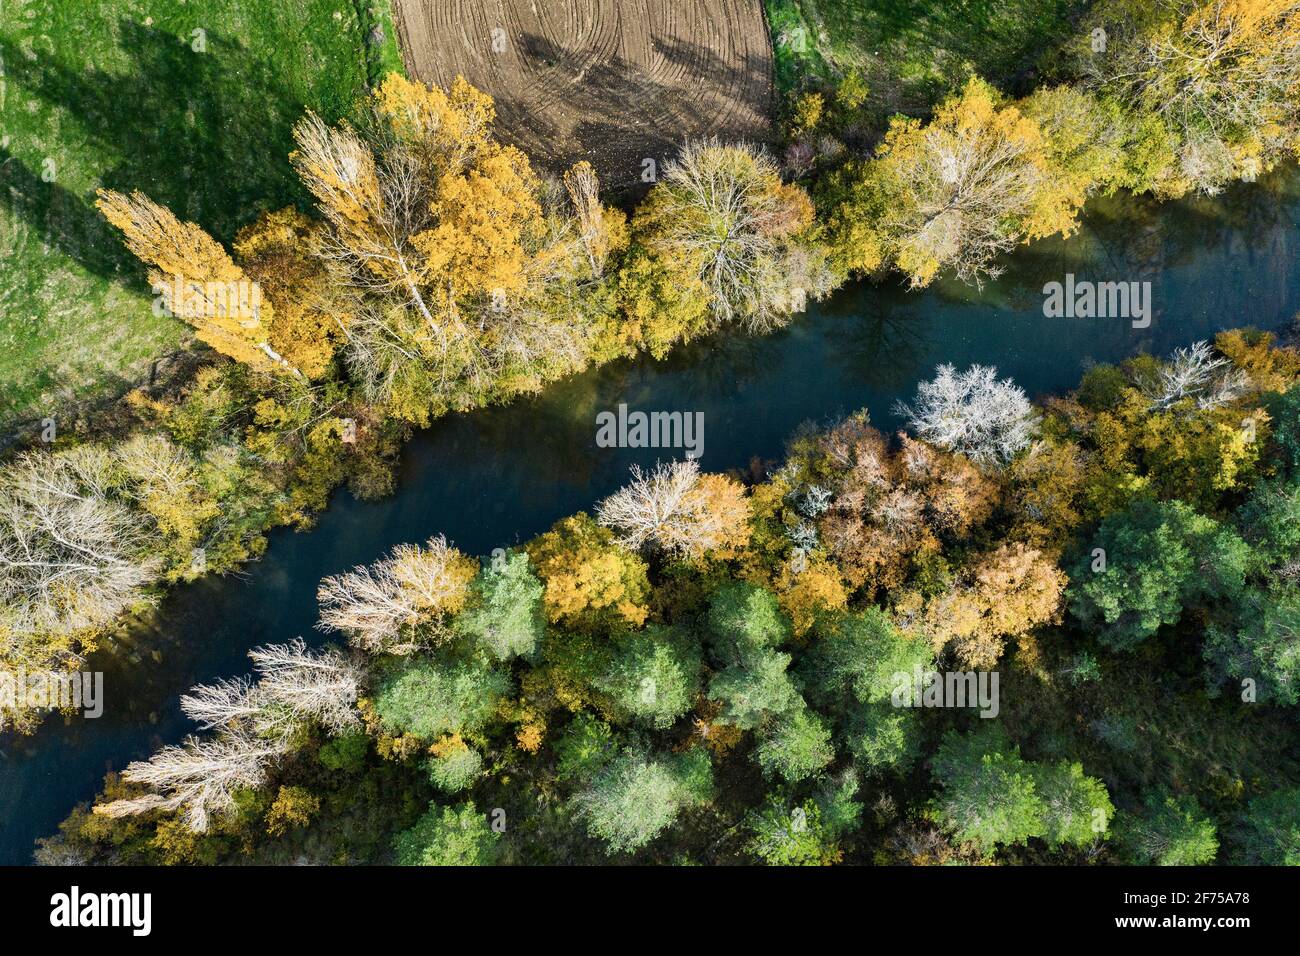 Vista aerea di un fiume con vegetazione ripariale in autunno. Foto Stock